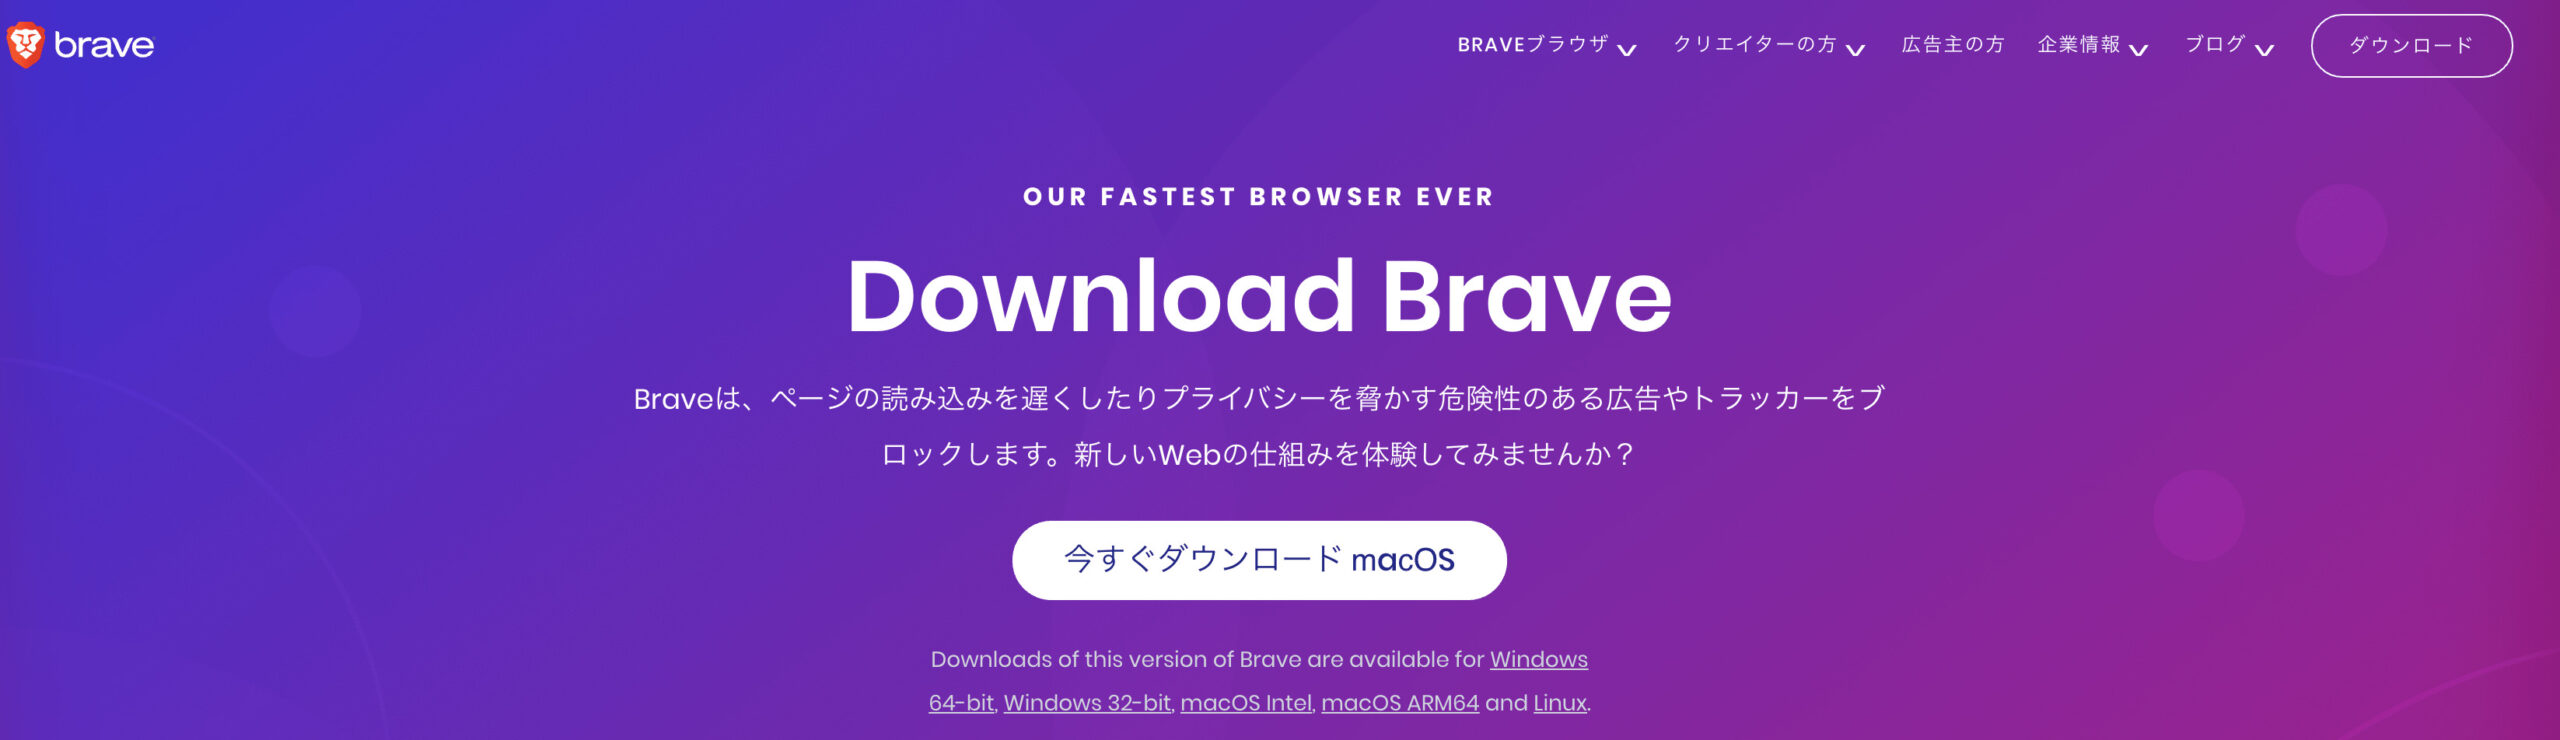 Apple Silicon M1チップ 対応 Braveブラウザインストール方法 Frees